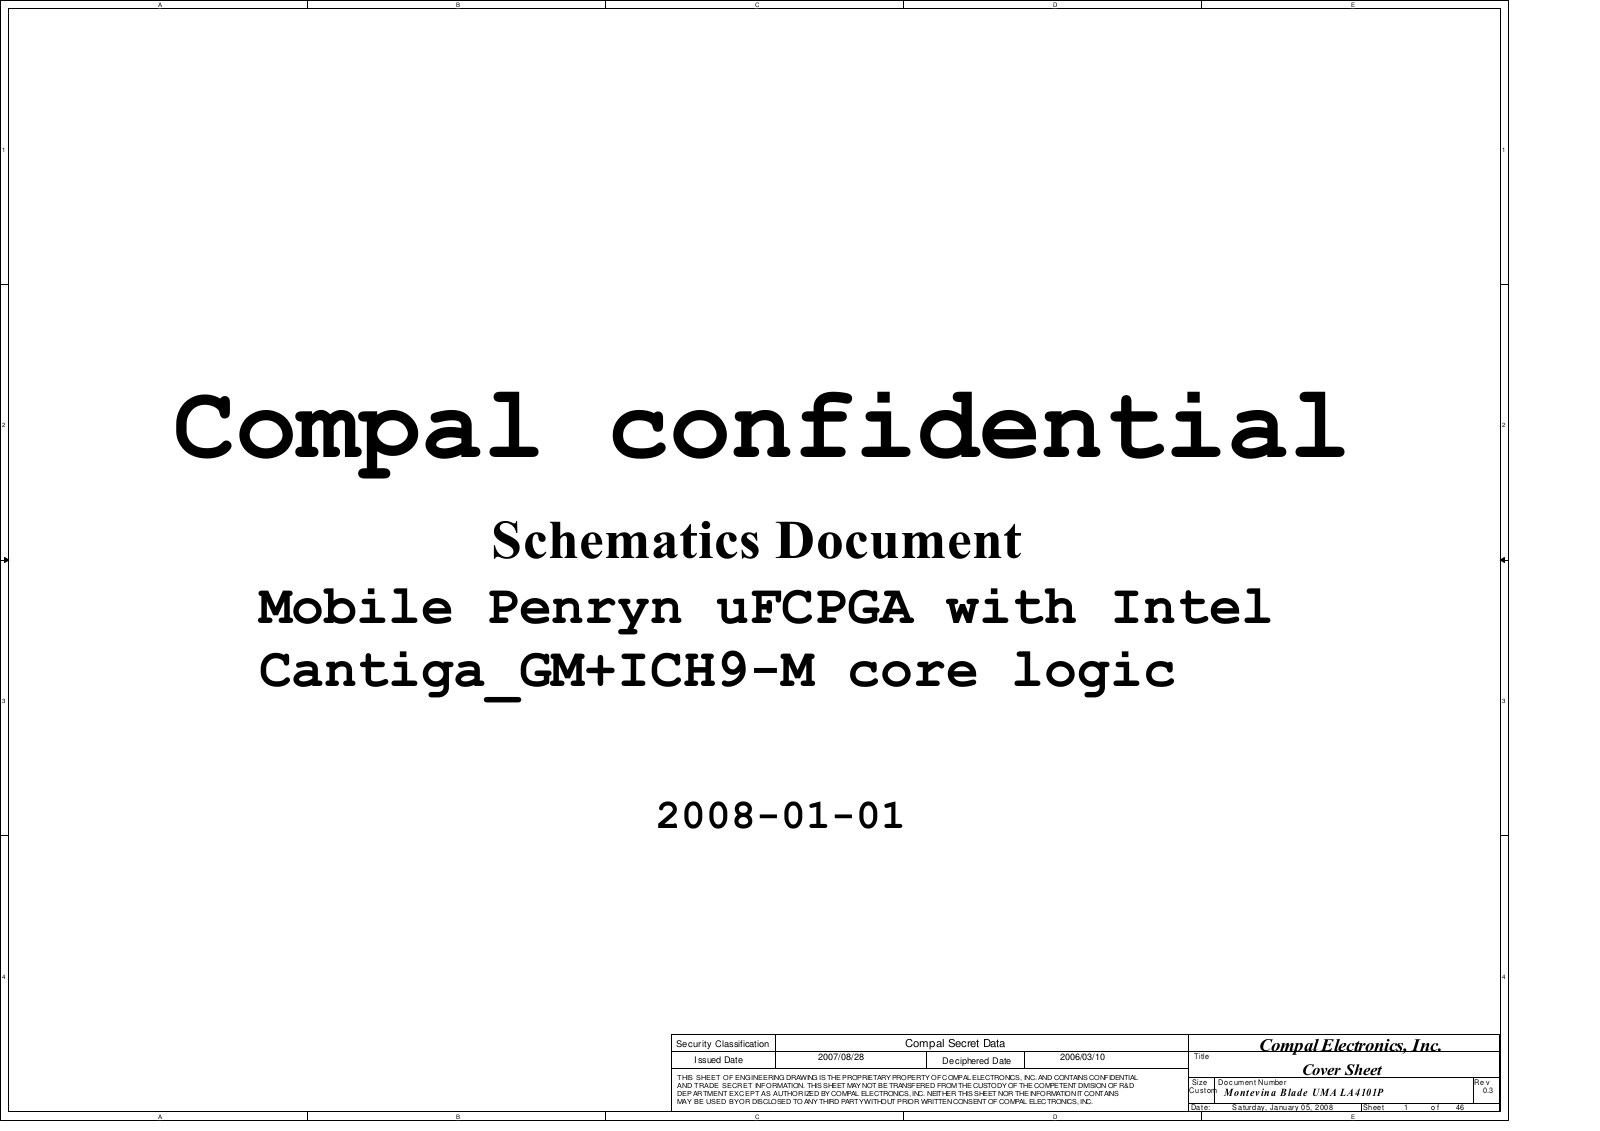 Compal LA-4101P, Compaq Presario CQ40, Compaq Presario CQ45, Pavilion dv4 Schematic